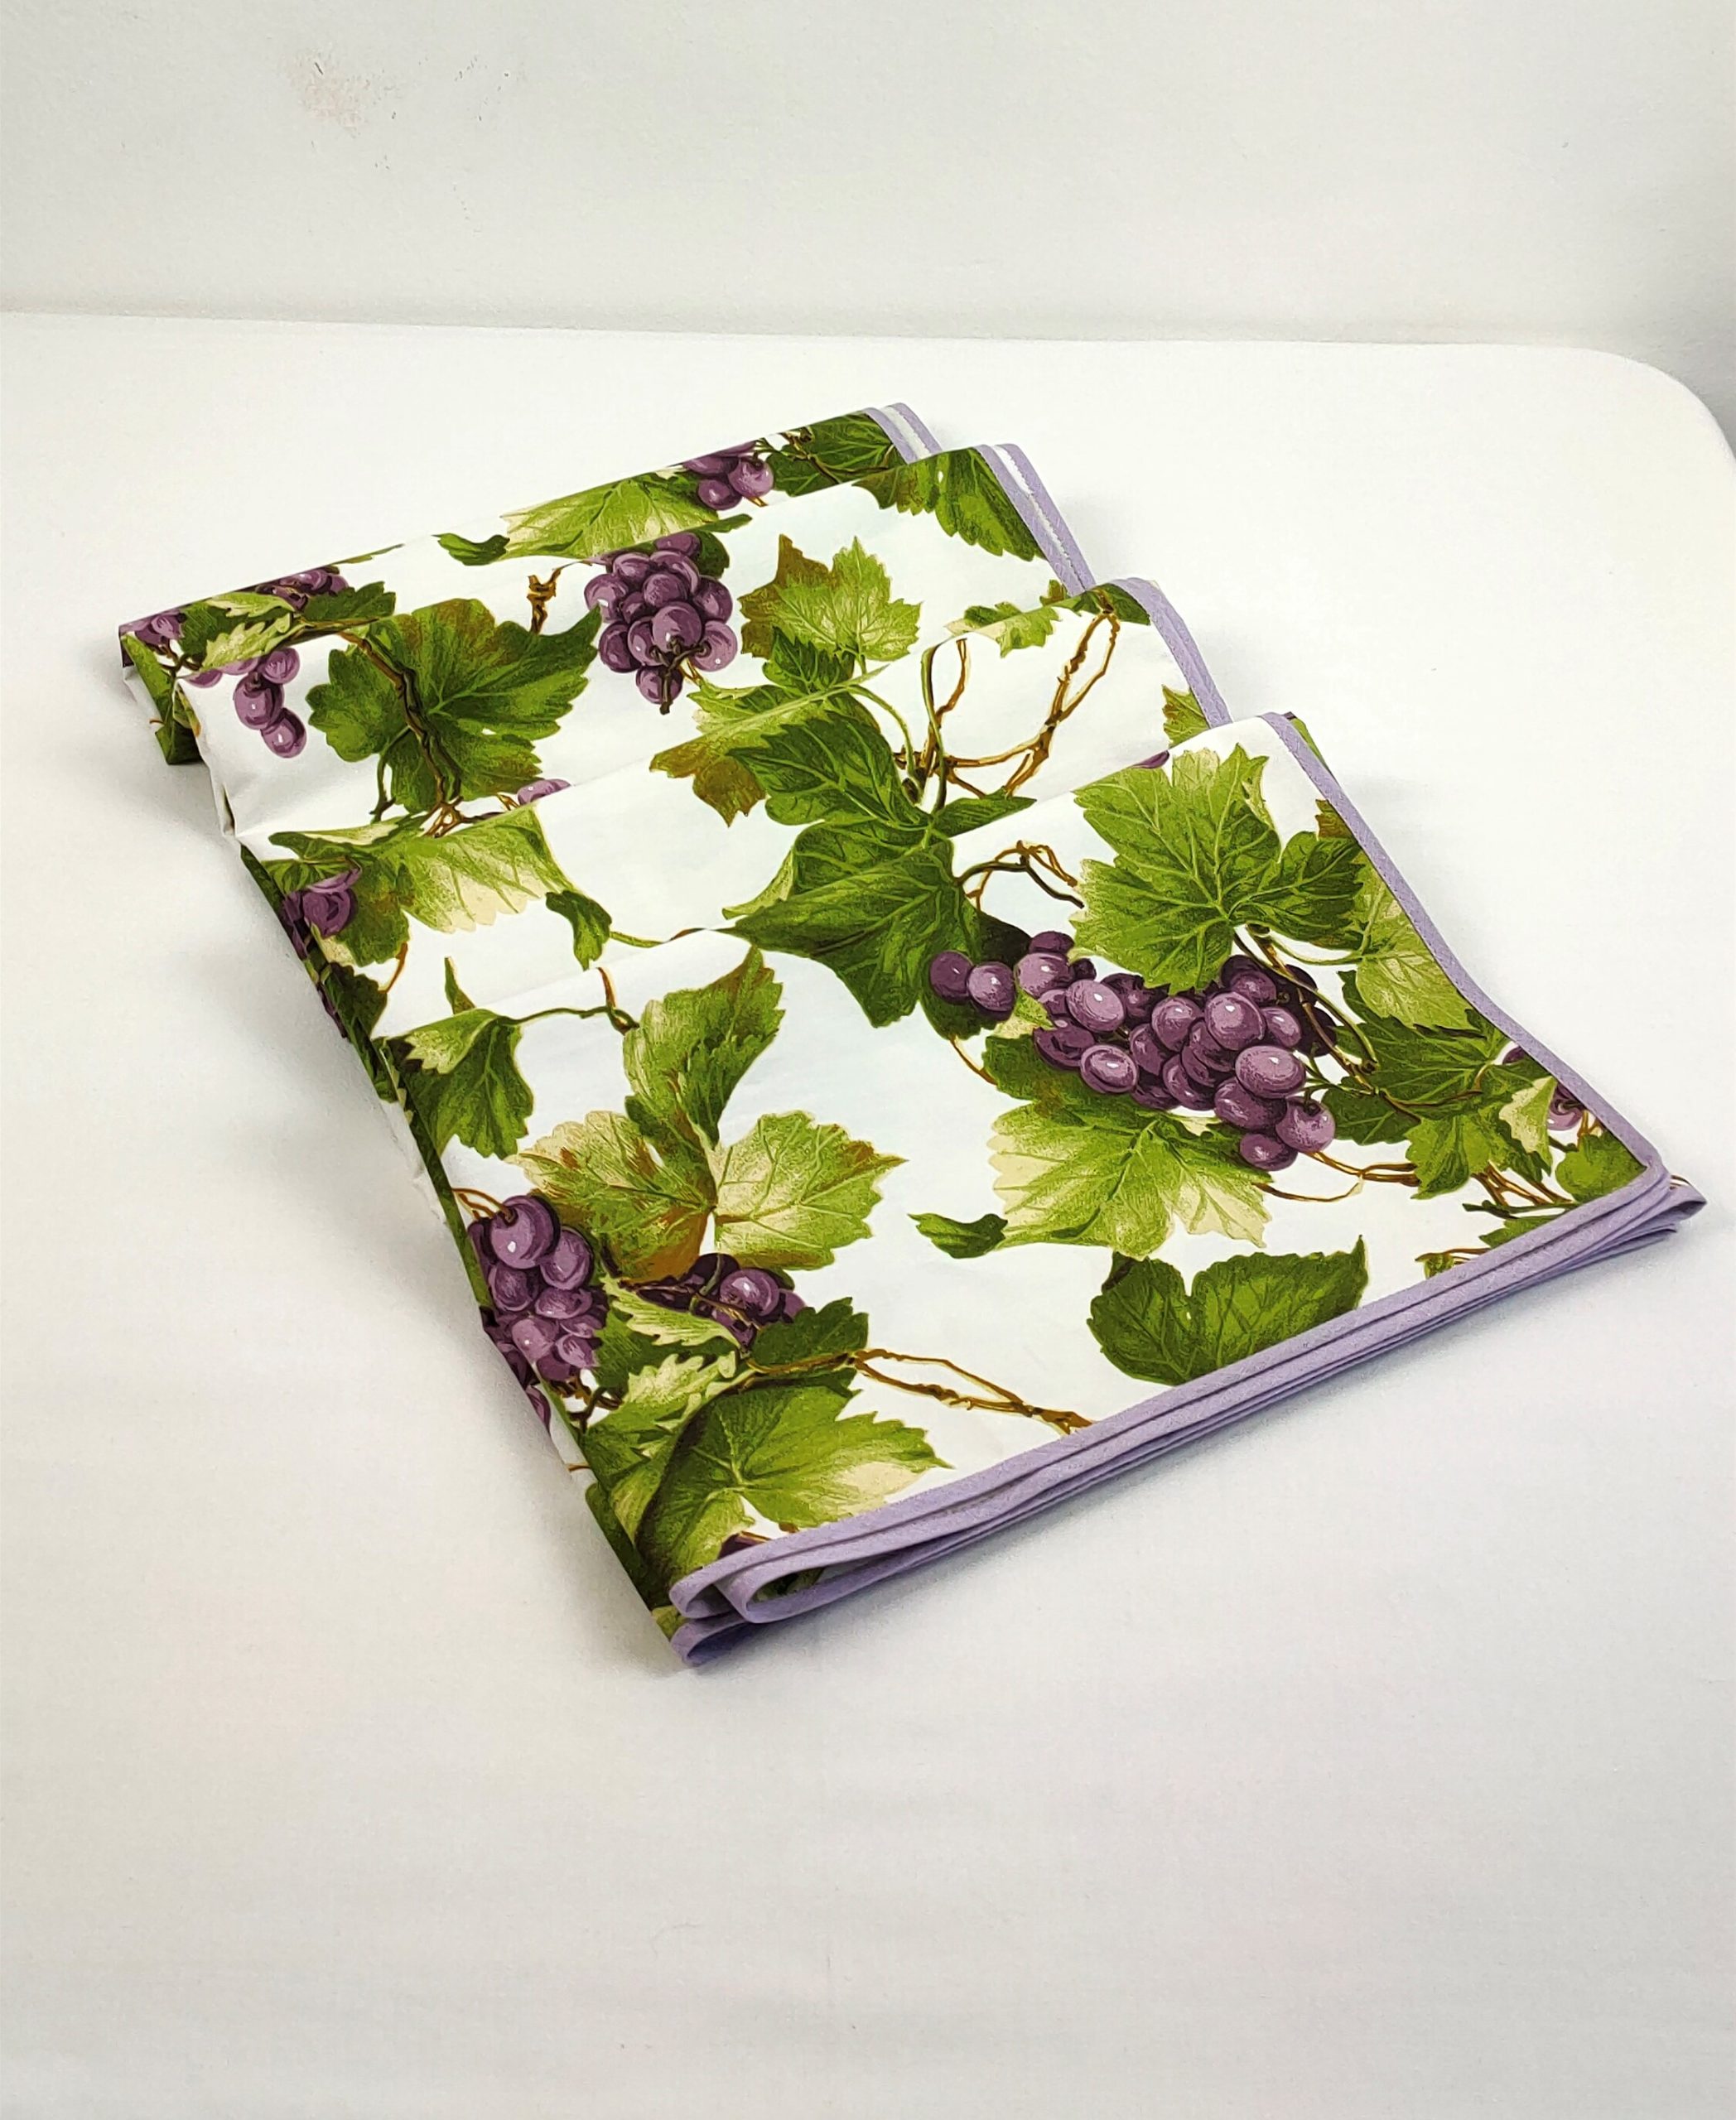 Tovaglia da tavola quadrata 4 posti stampa uva - 4 seater square tablecloth  grapes printed